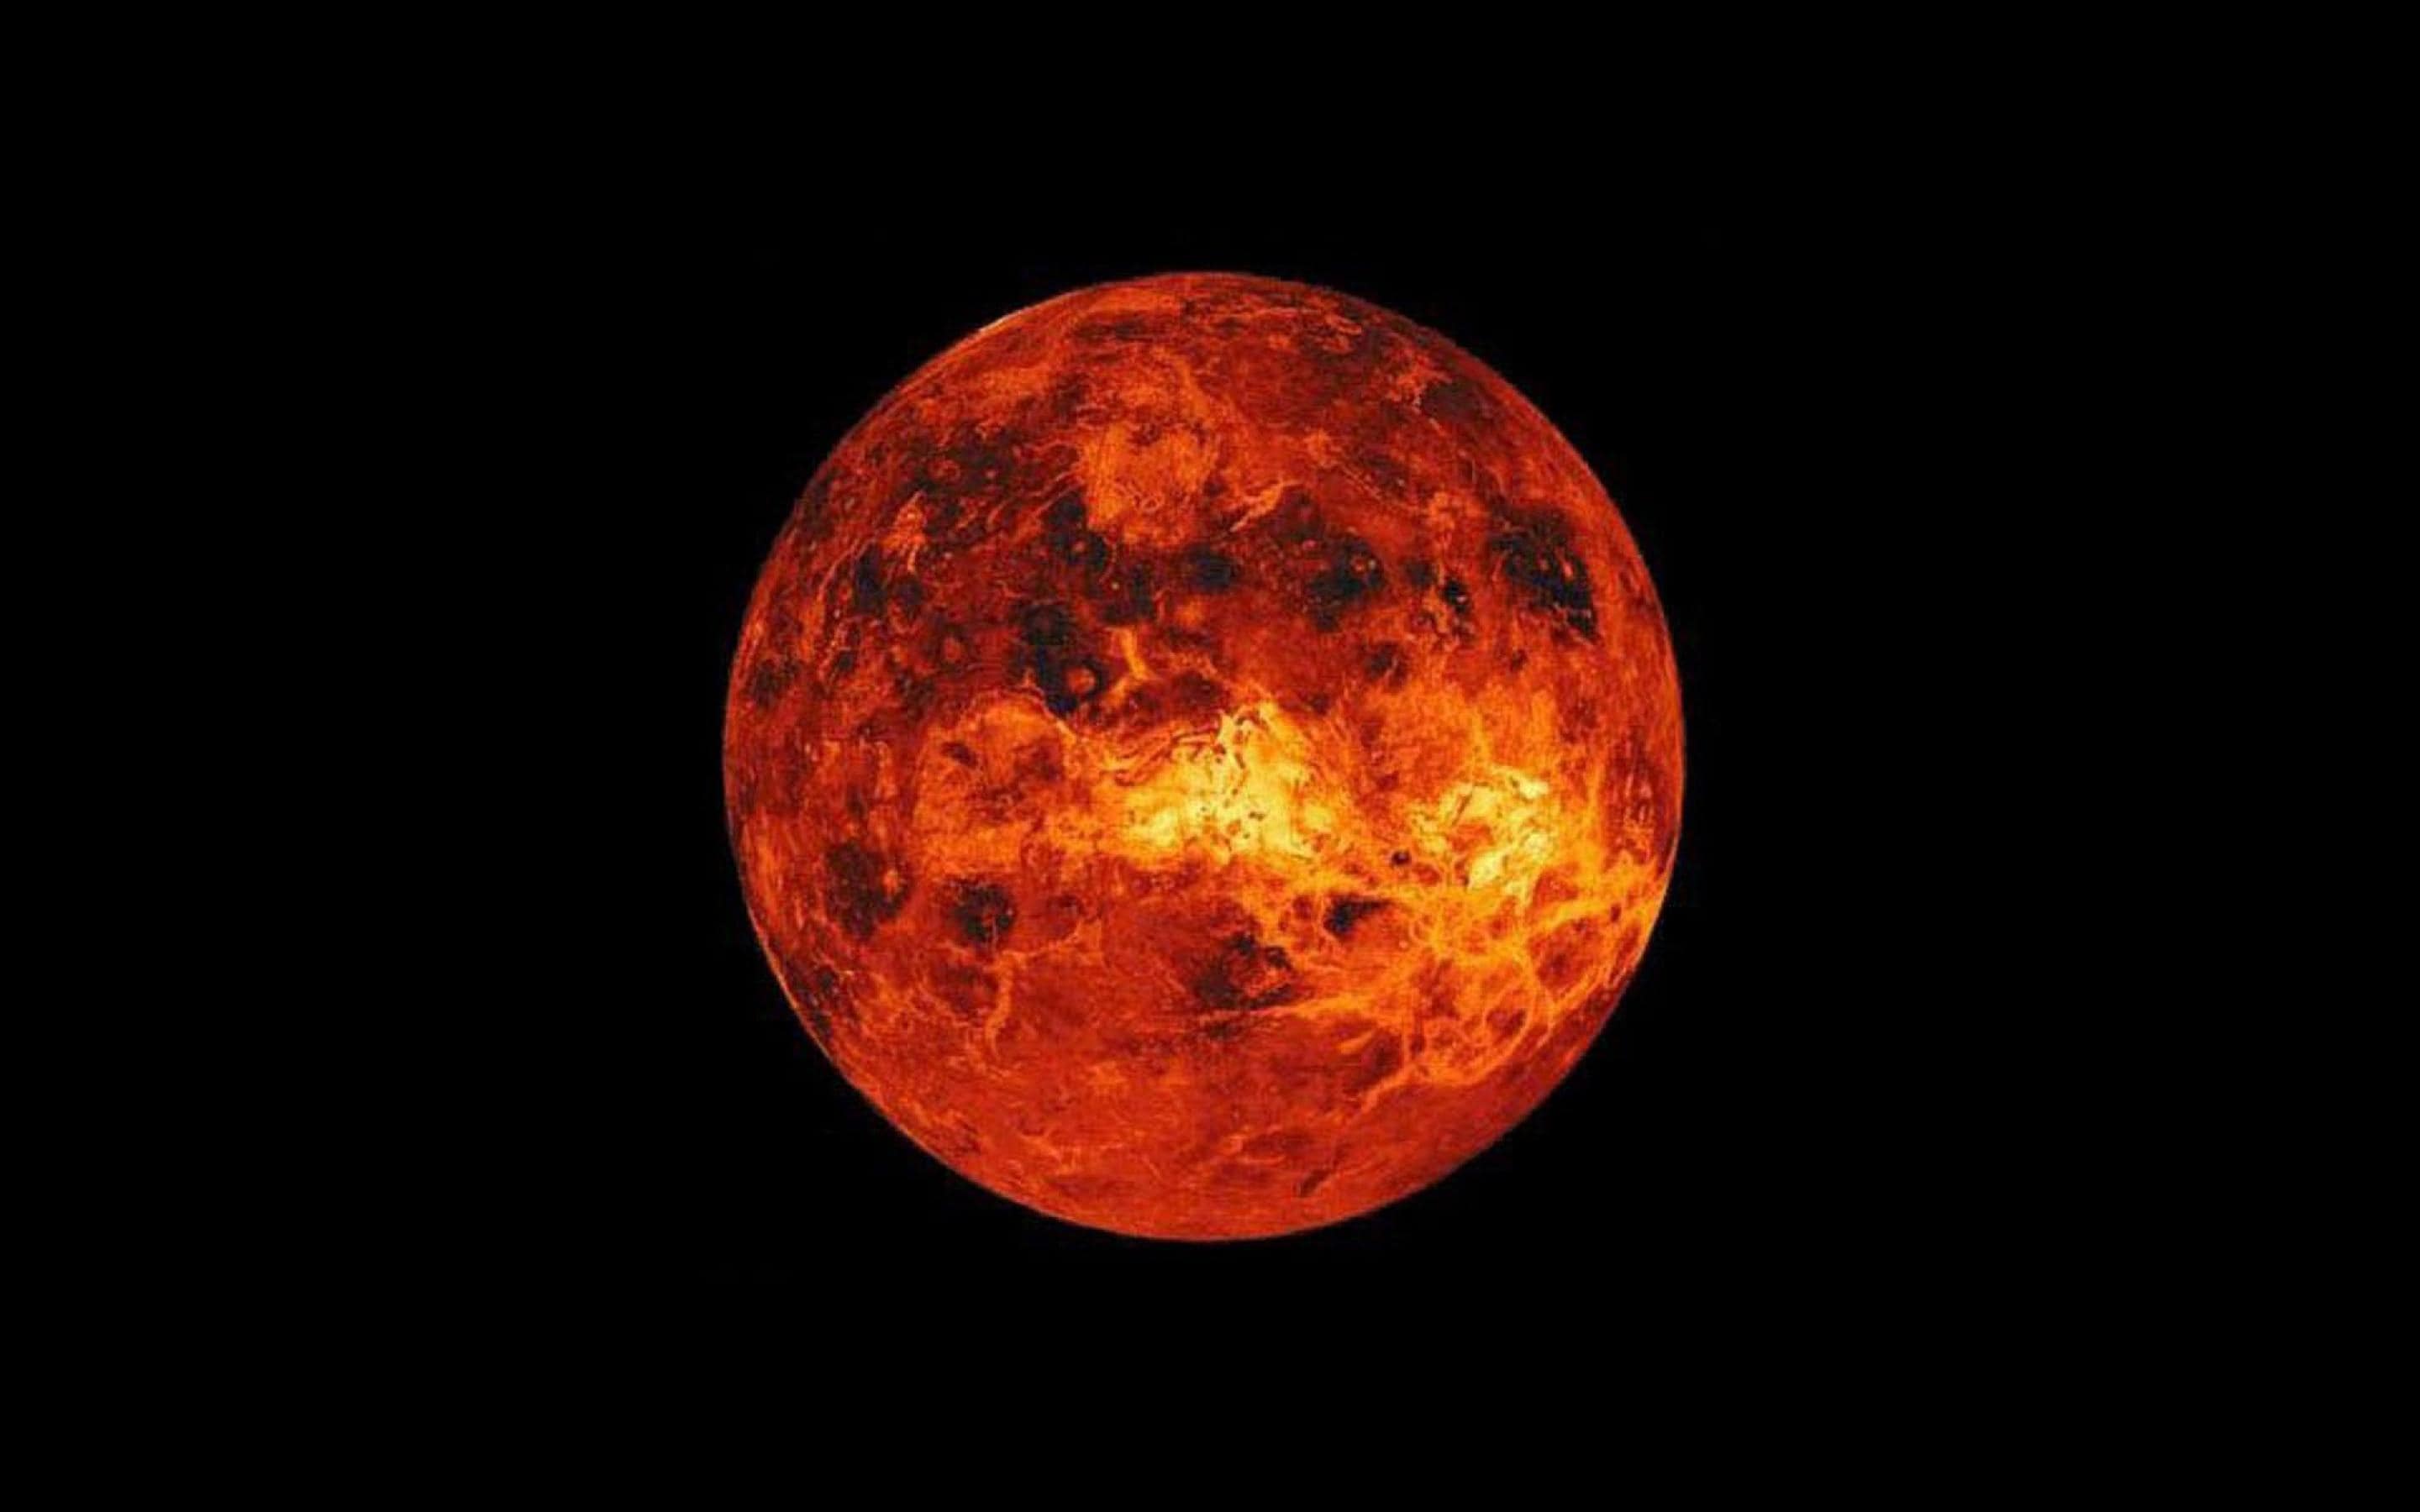 دانلود عکس چشمگیر از سیاره ونوس به رنگ سرخ درخشان